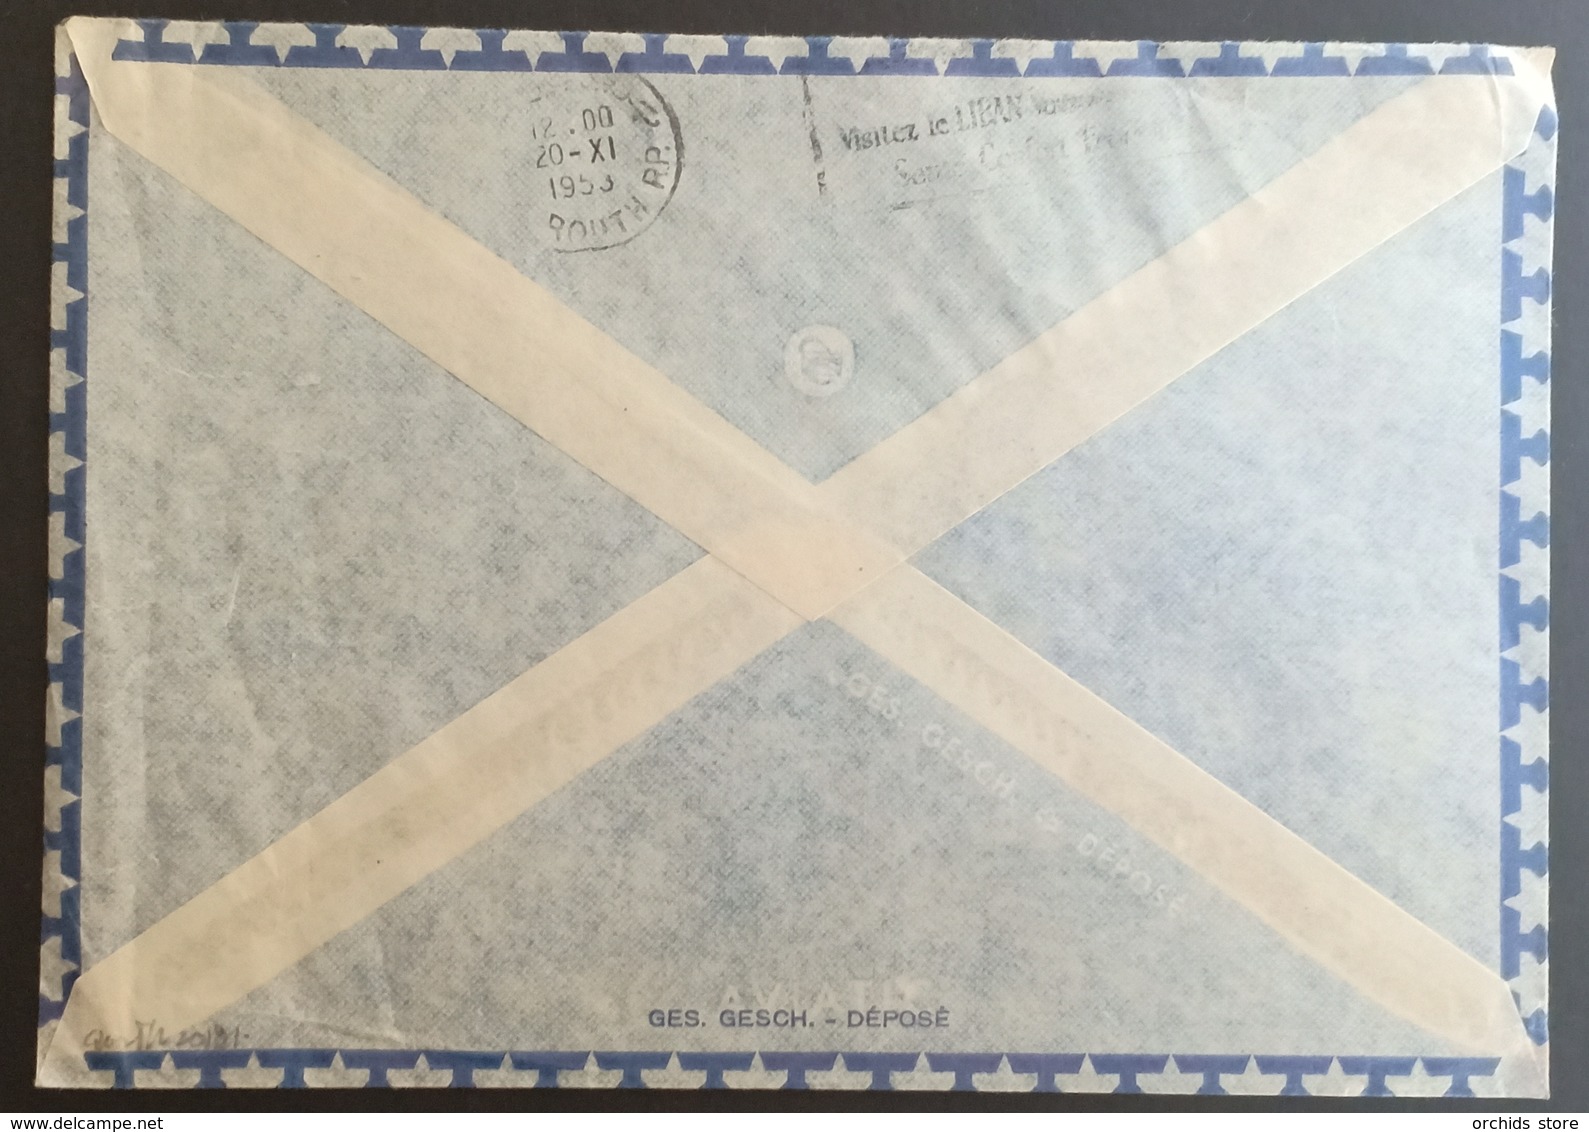 Lebanon 1953 Cover Sent To Switzerland With Very Rare Cancel, CHEKKA-USINE, Hexagonal Blue Type - Lebanon